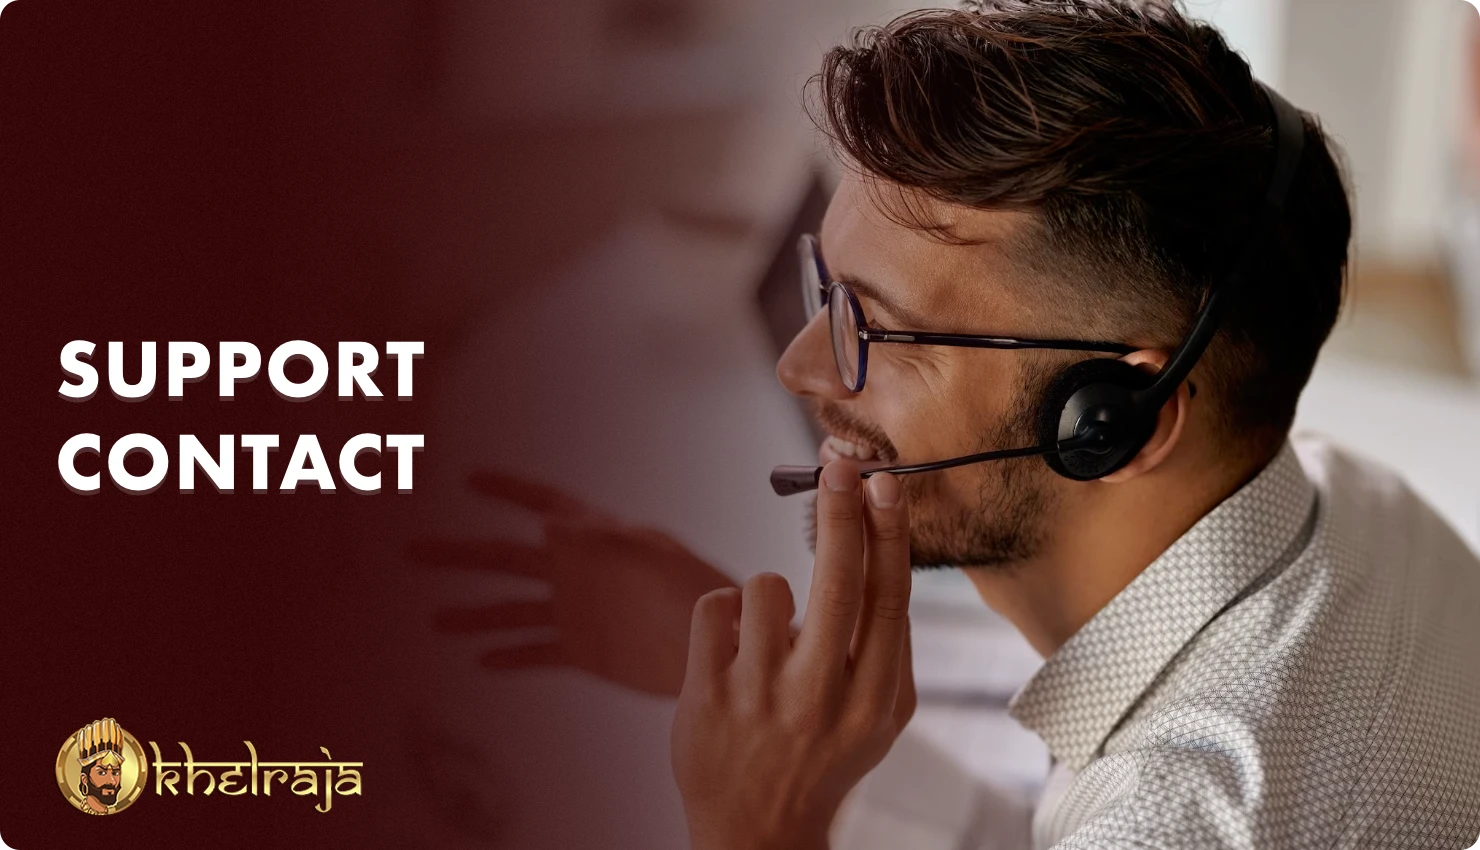 भारतीय खिलाड़ी निम्नलिखित संचार विकल्पों में से एक का उपयोग करके Khelraja सपोर्ट से संपर्क कर सकते हैं